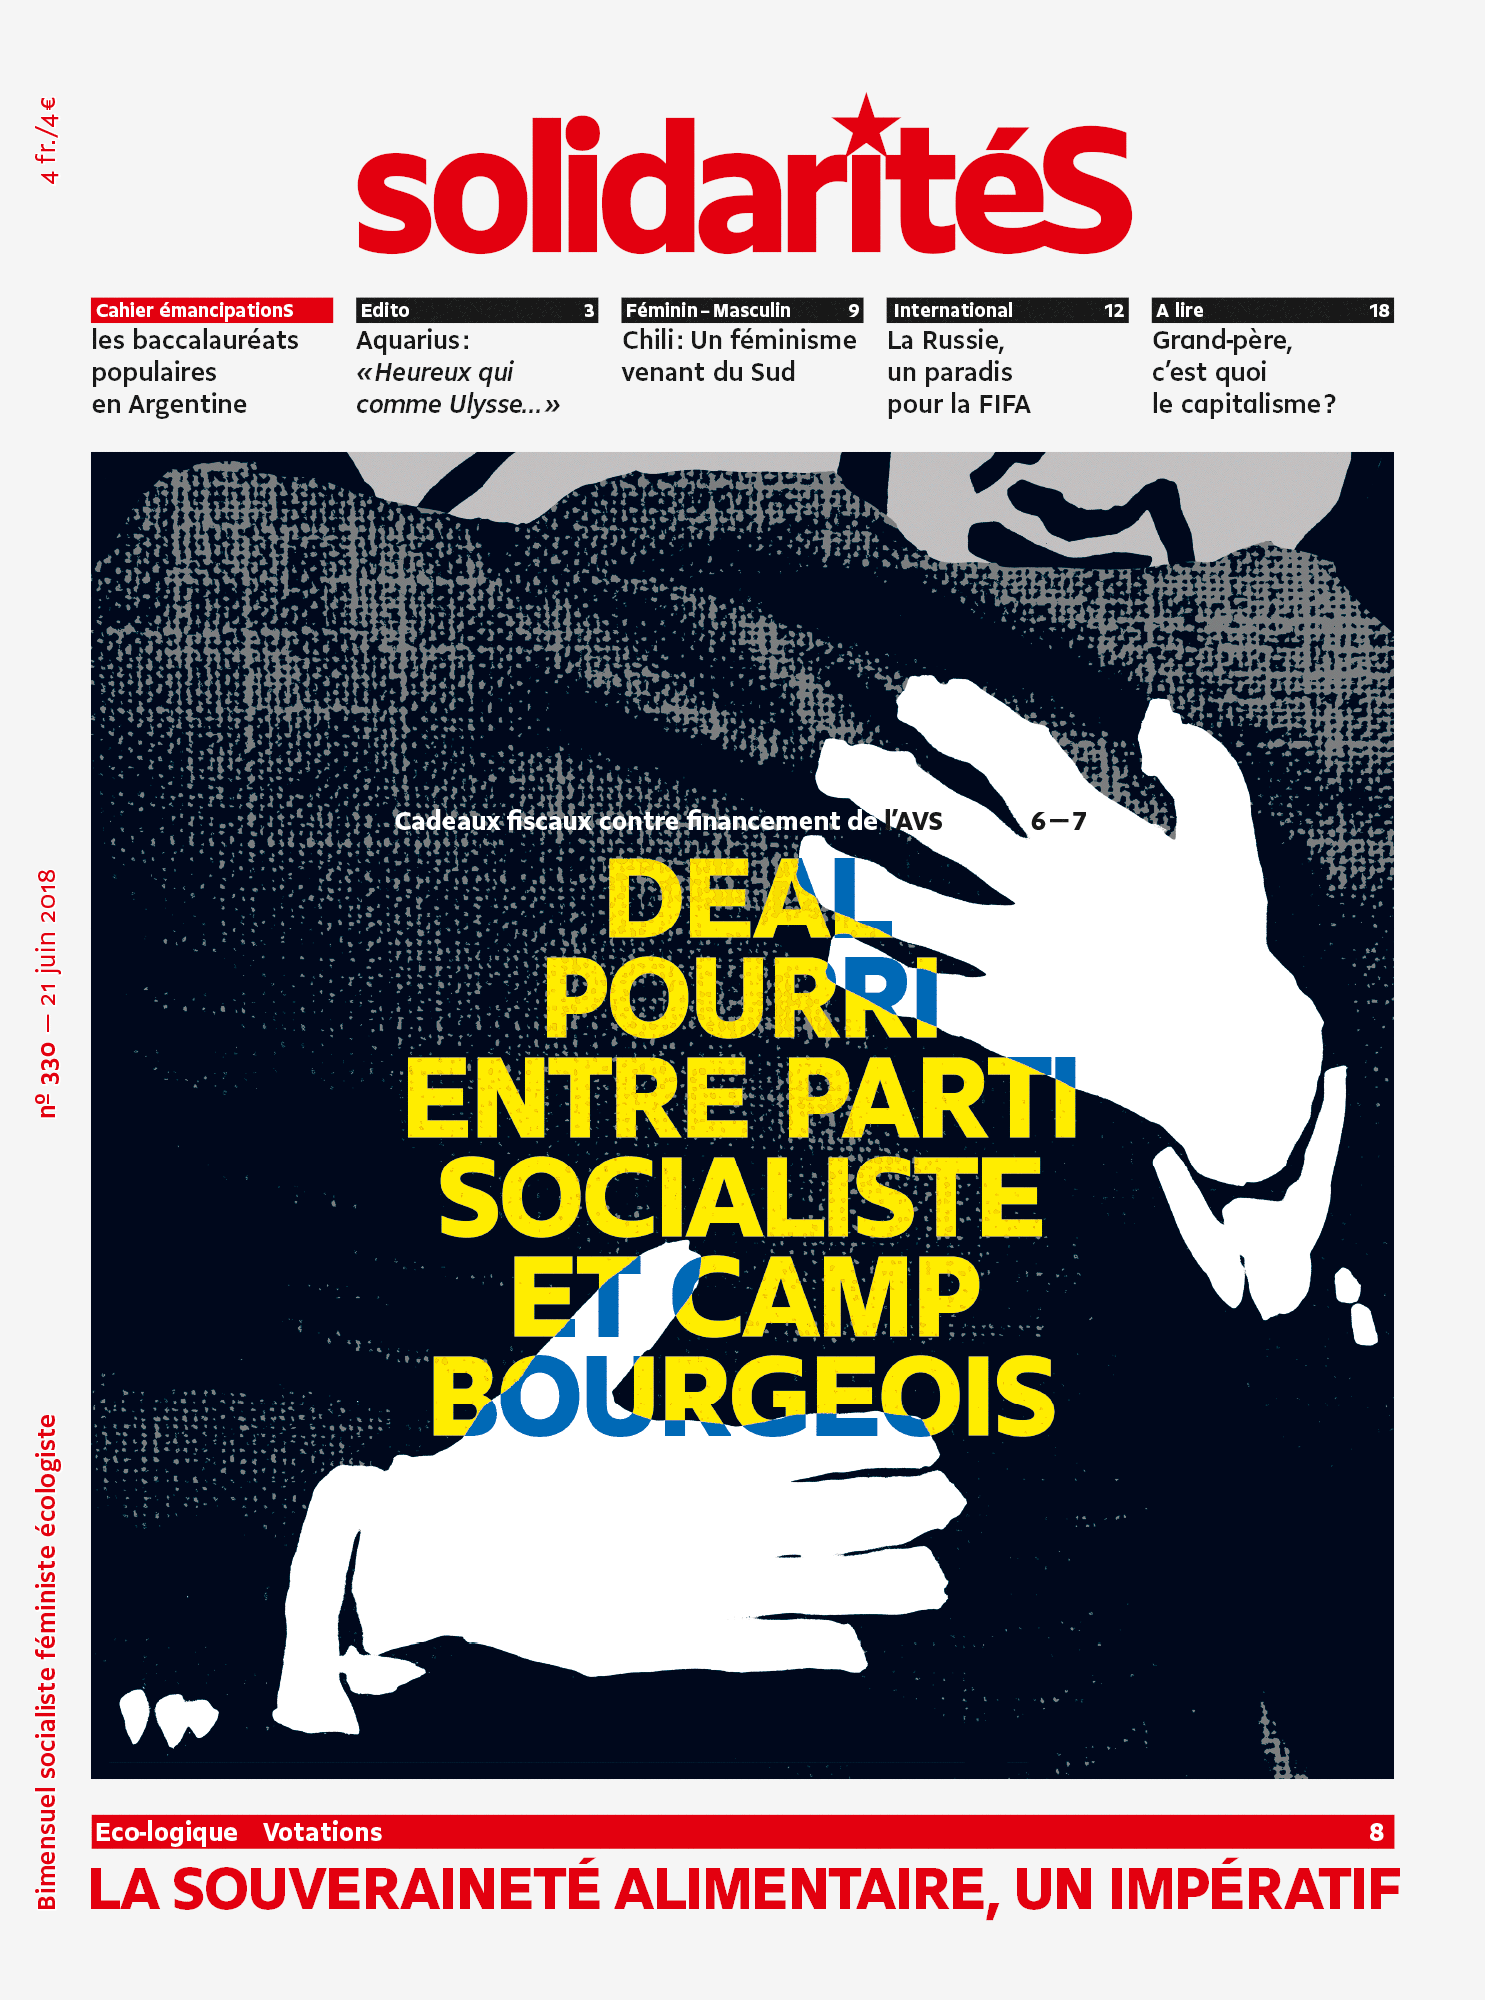 Couverture du numéro 330 du bimensuel solidaritéS: Deal pourri entre parti socialiste et camp bourgeois